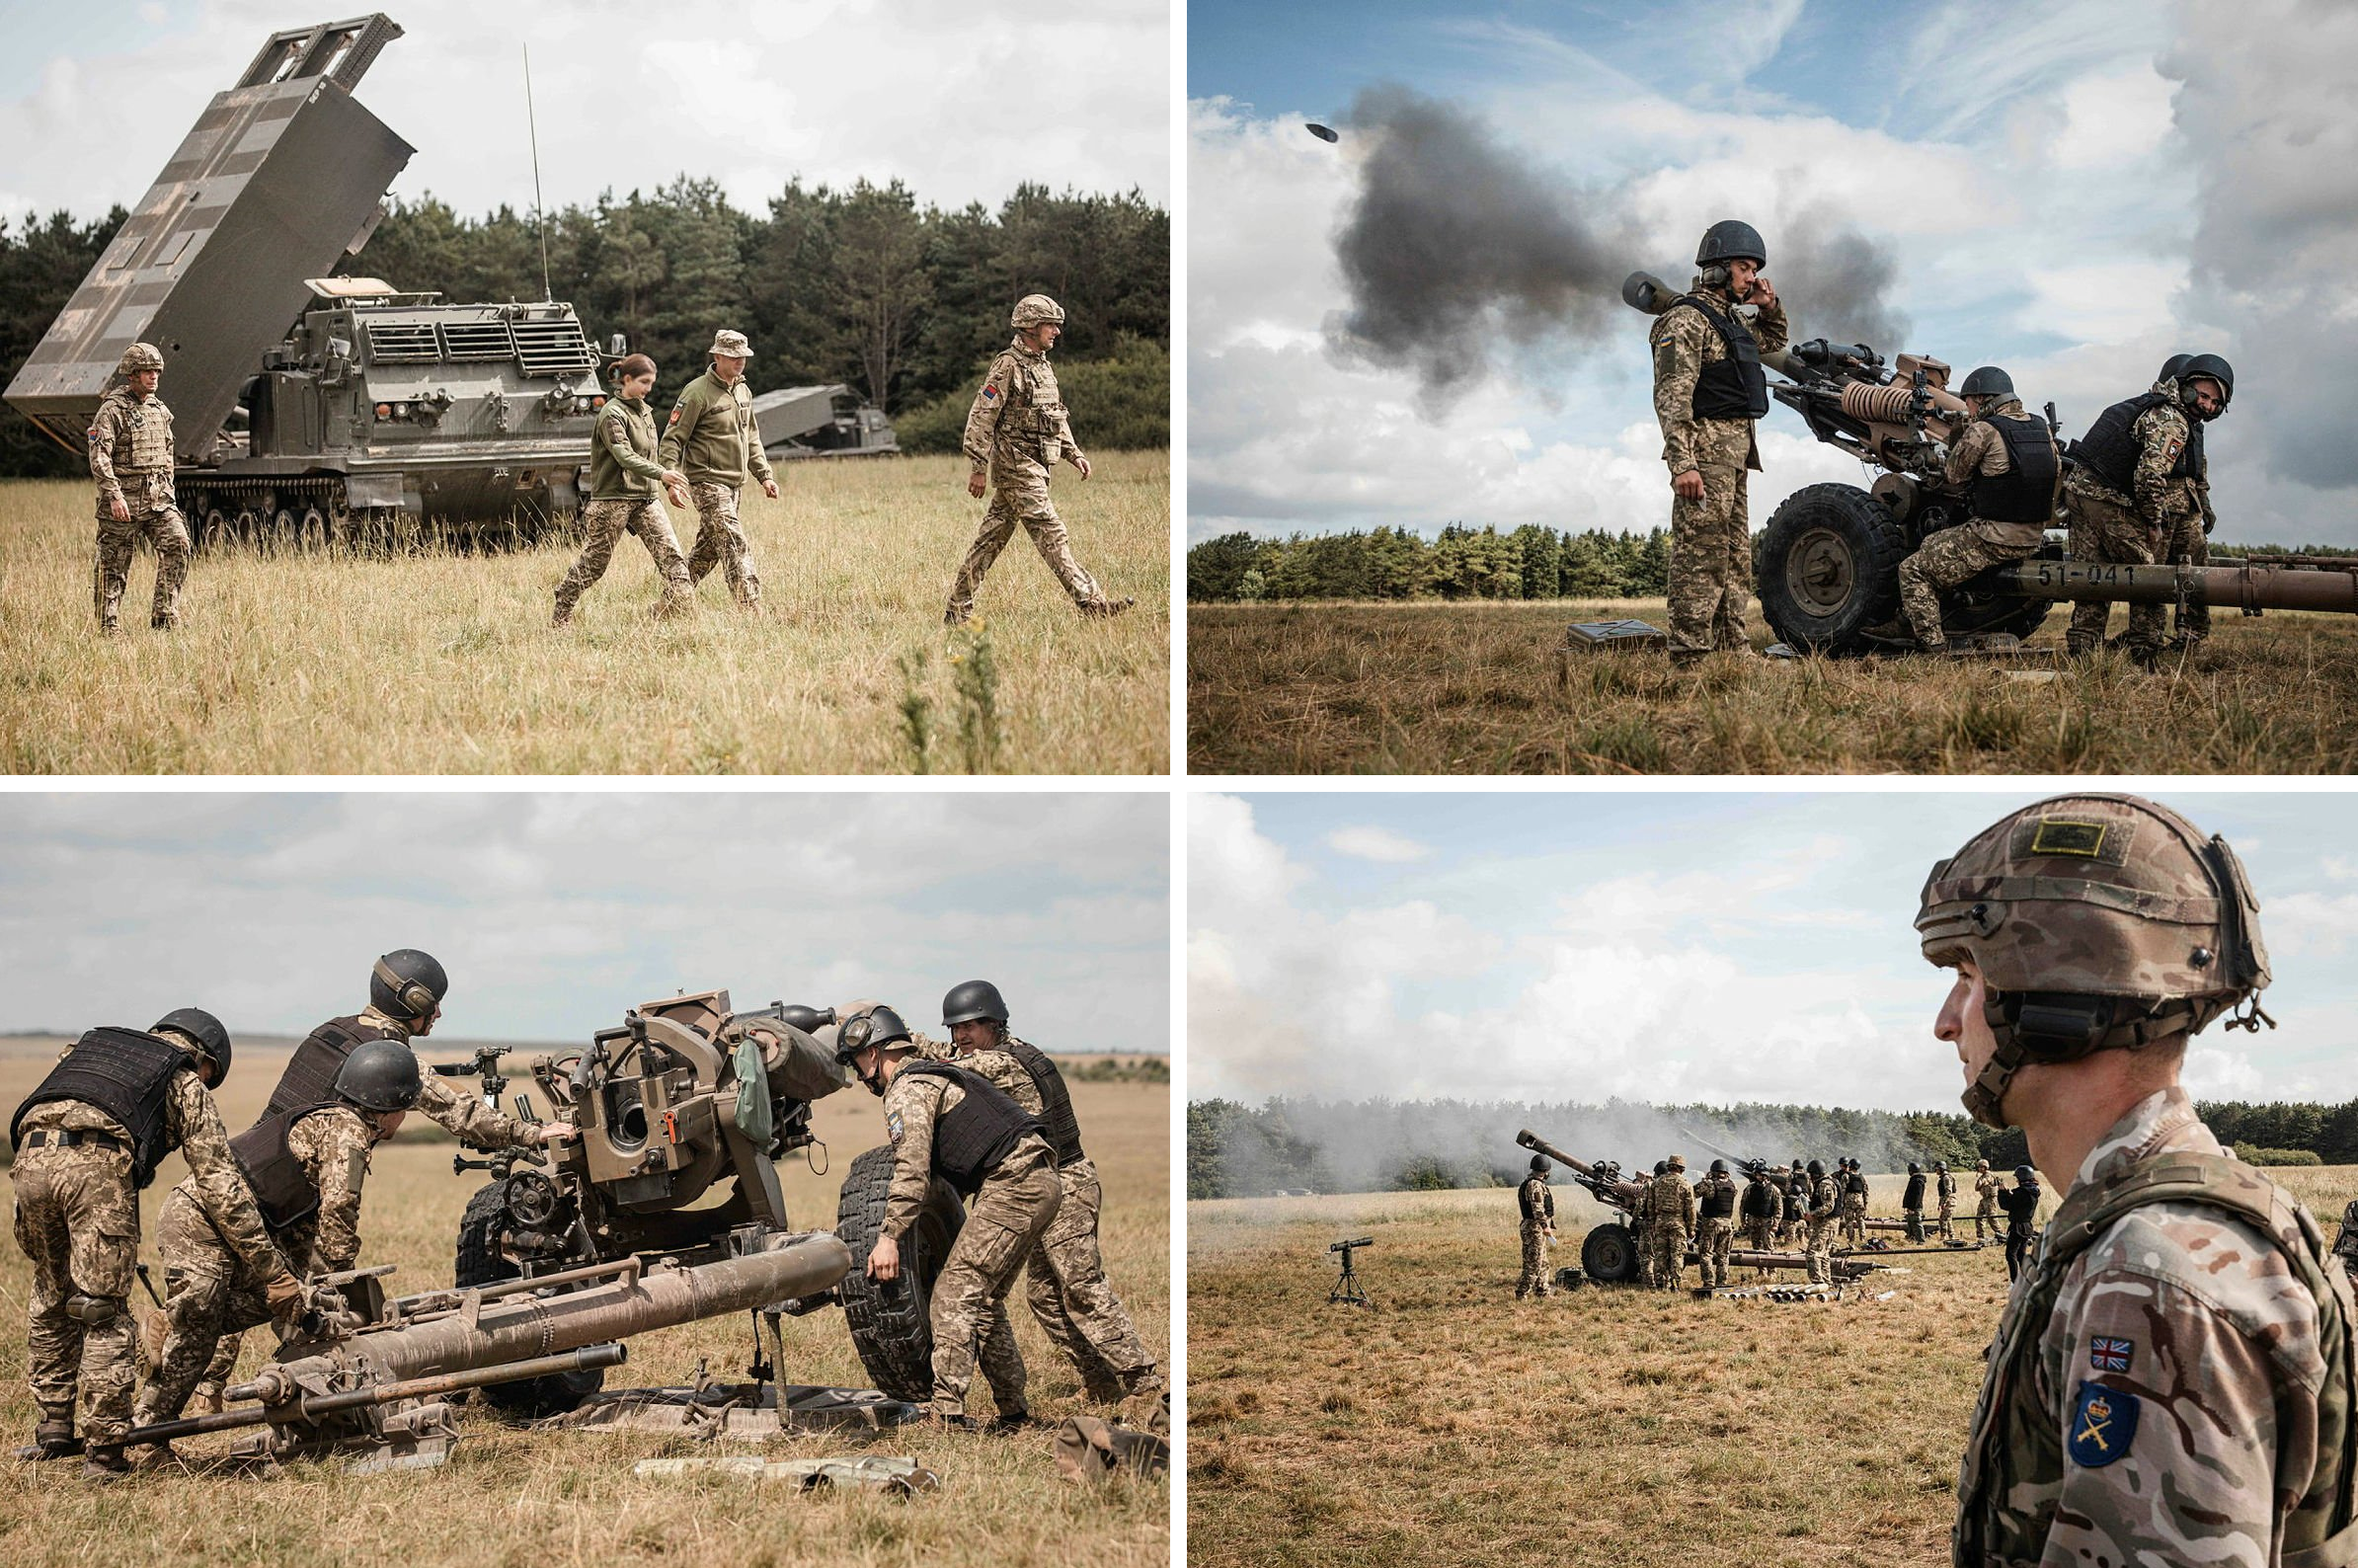 Sztab Generalny Sił Zbrojnych Ukrainy pokazał szkolenie wojska na M270 MLRS i haubicach L118